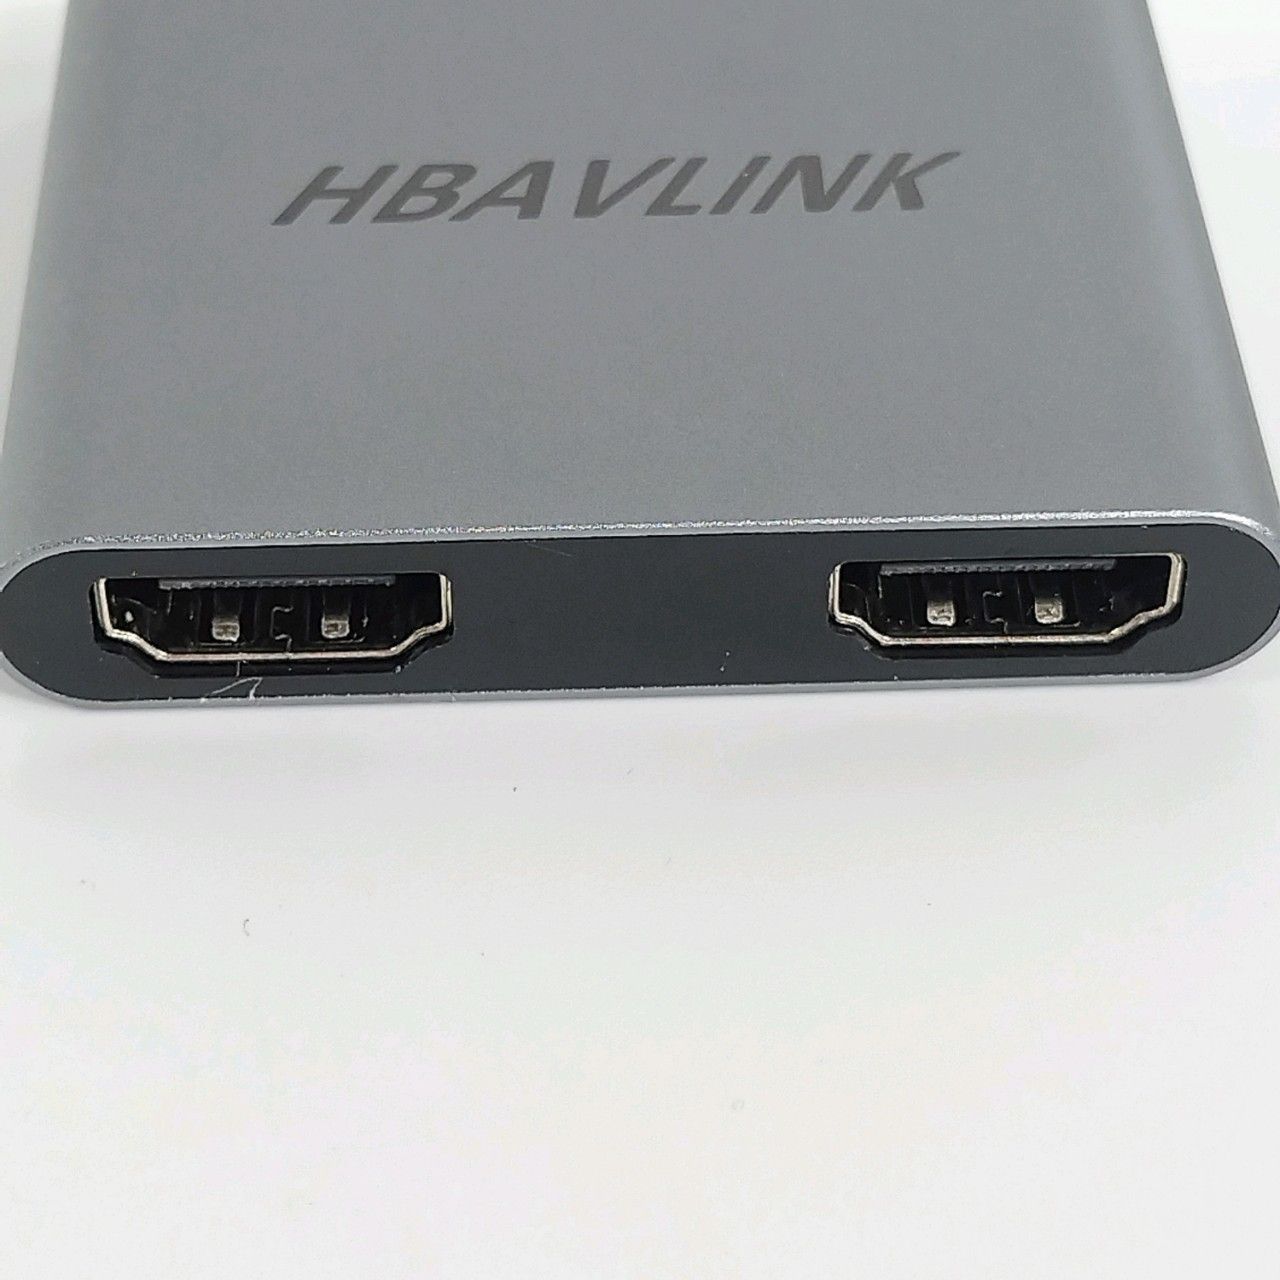 HDMI 分配器 拡張モード対応、HBAVLINK Type C マルチディスプレイ